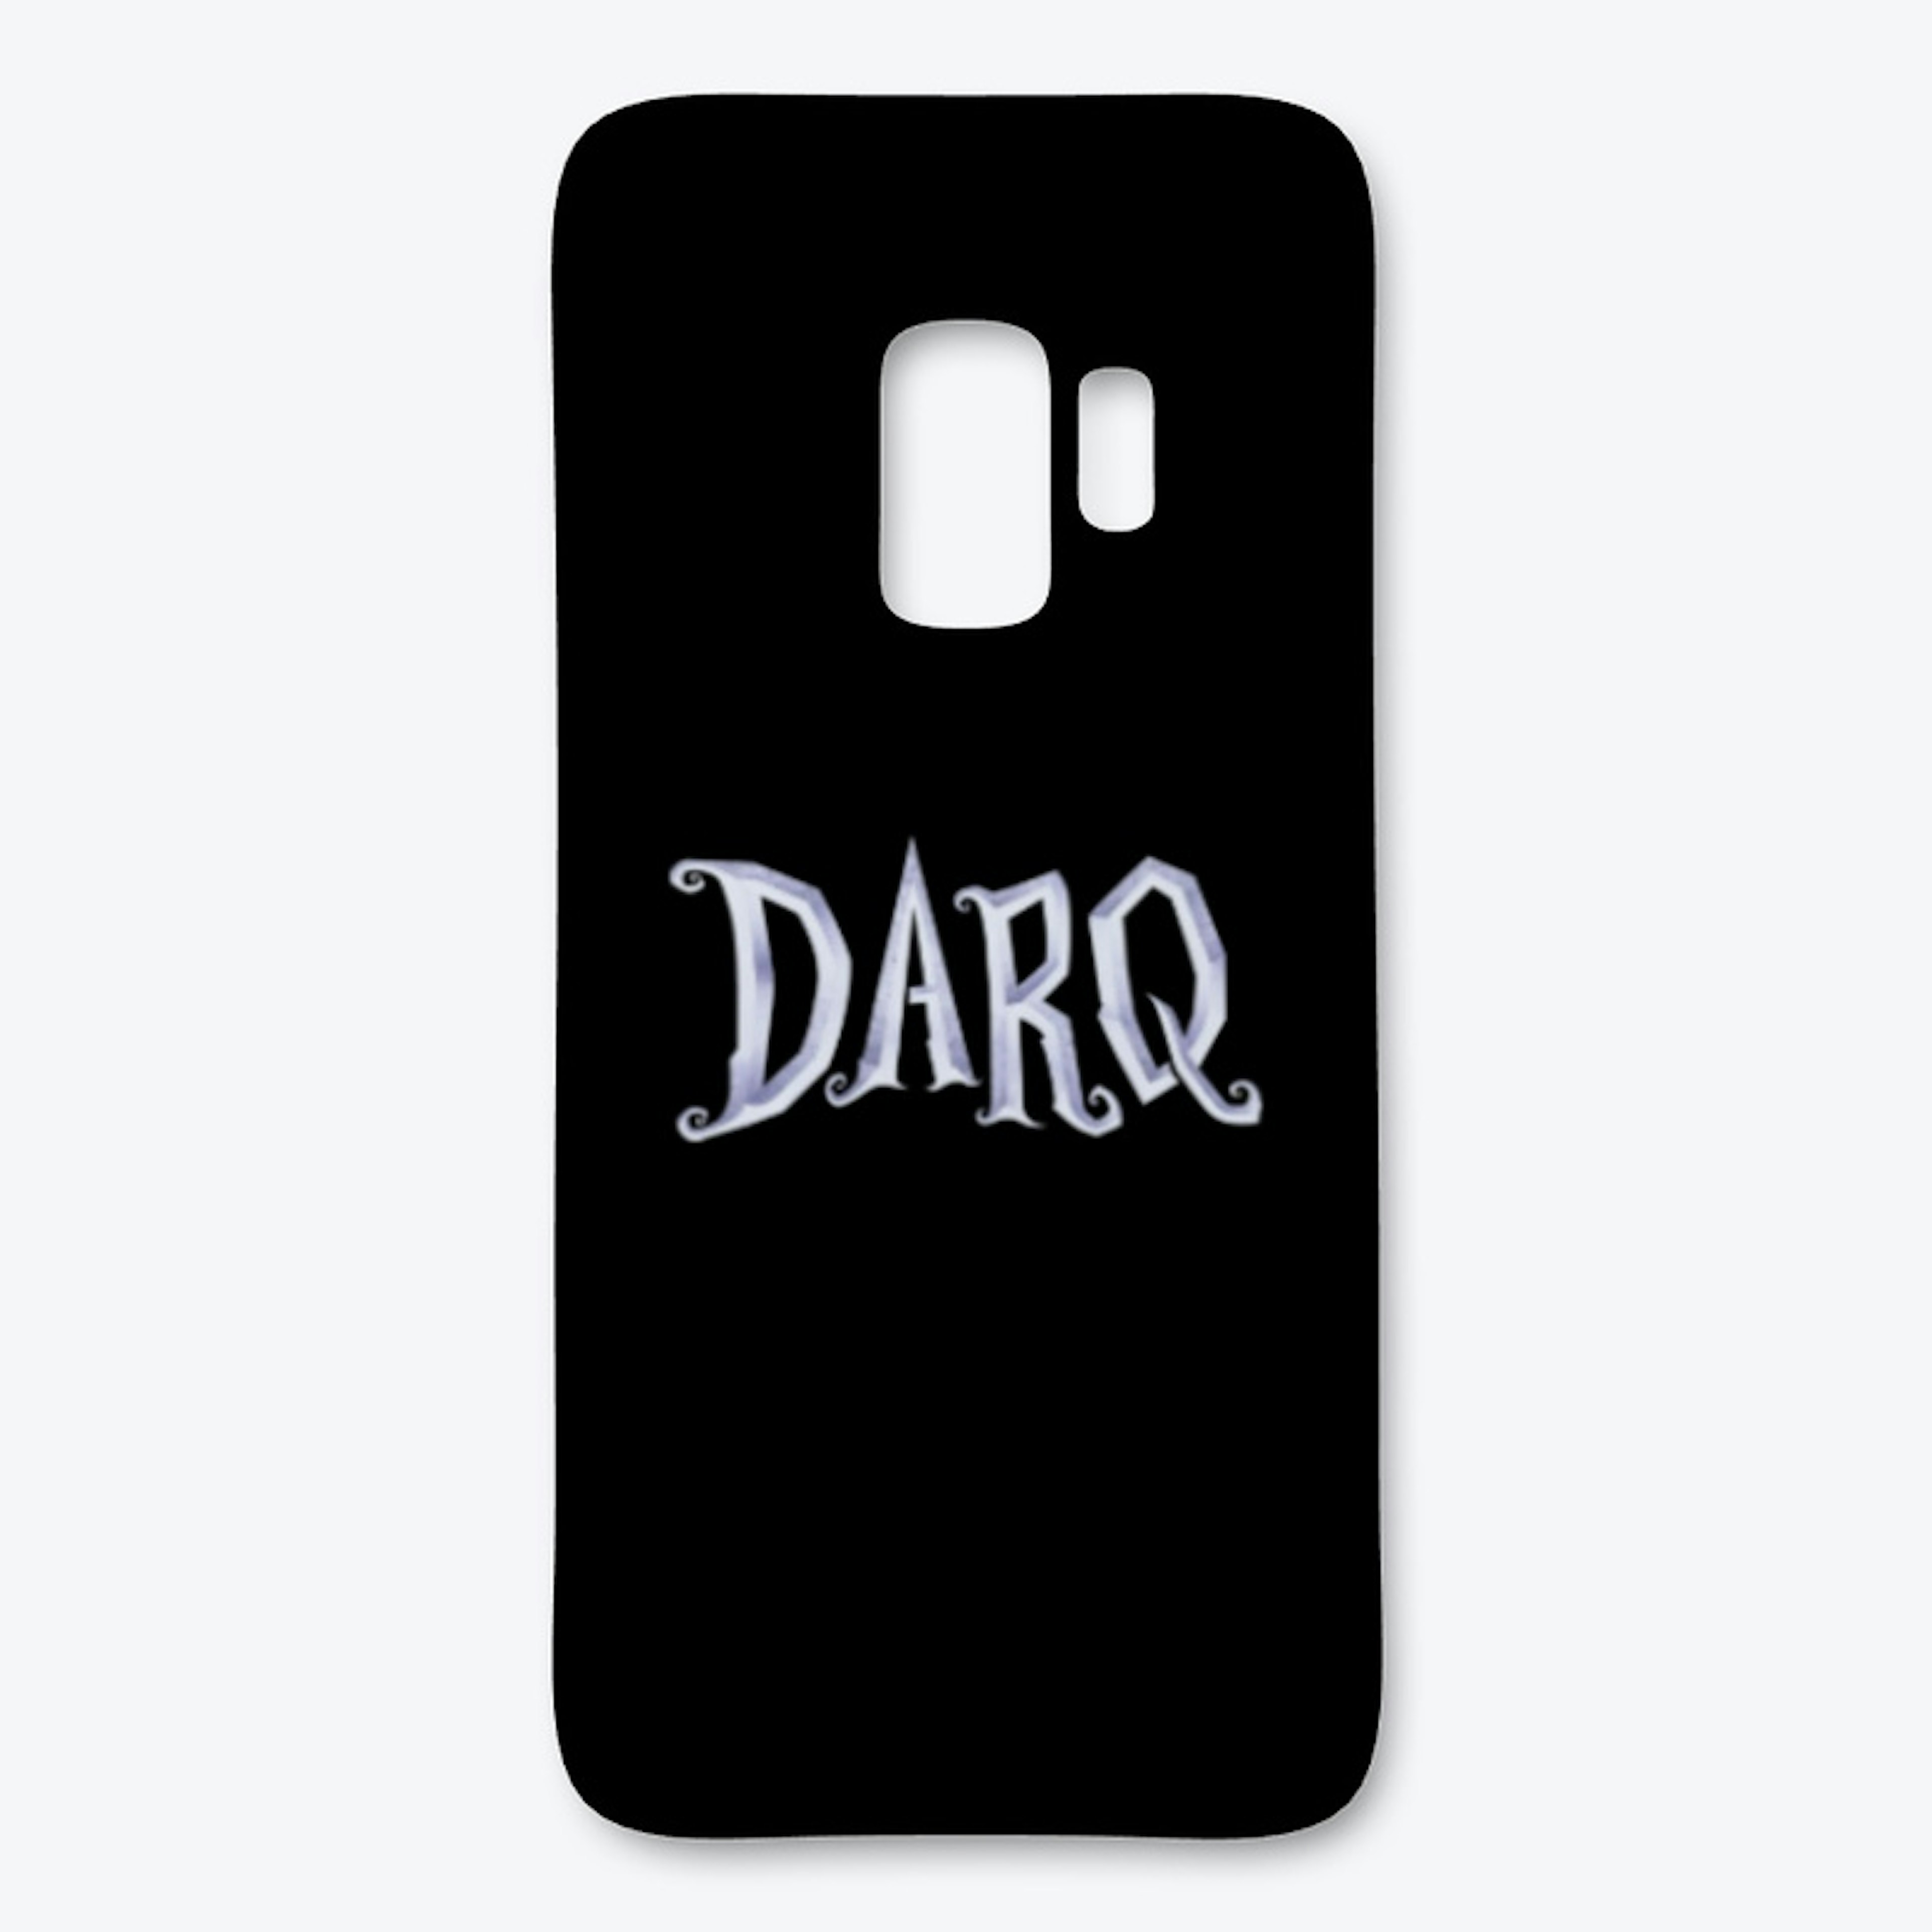 DARQ Samsung case